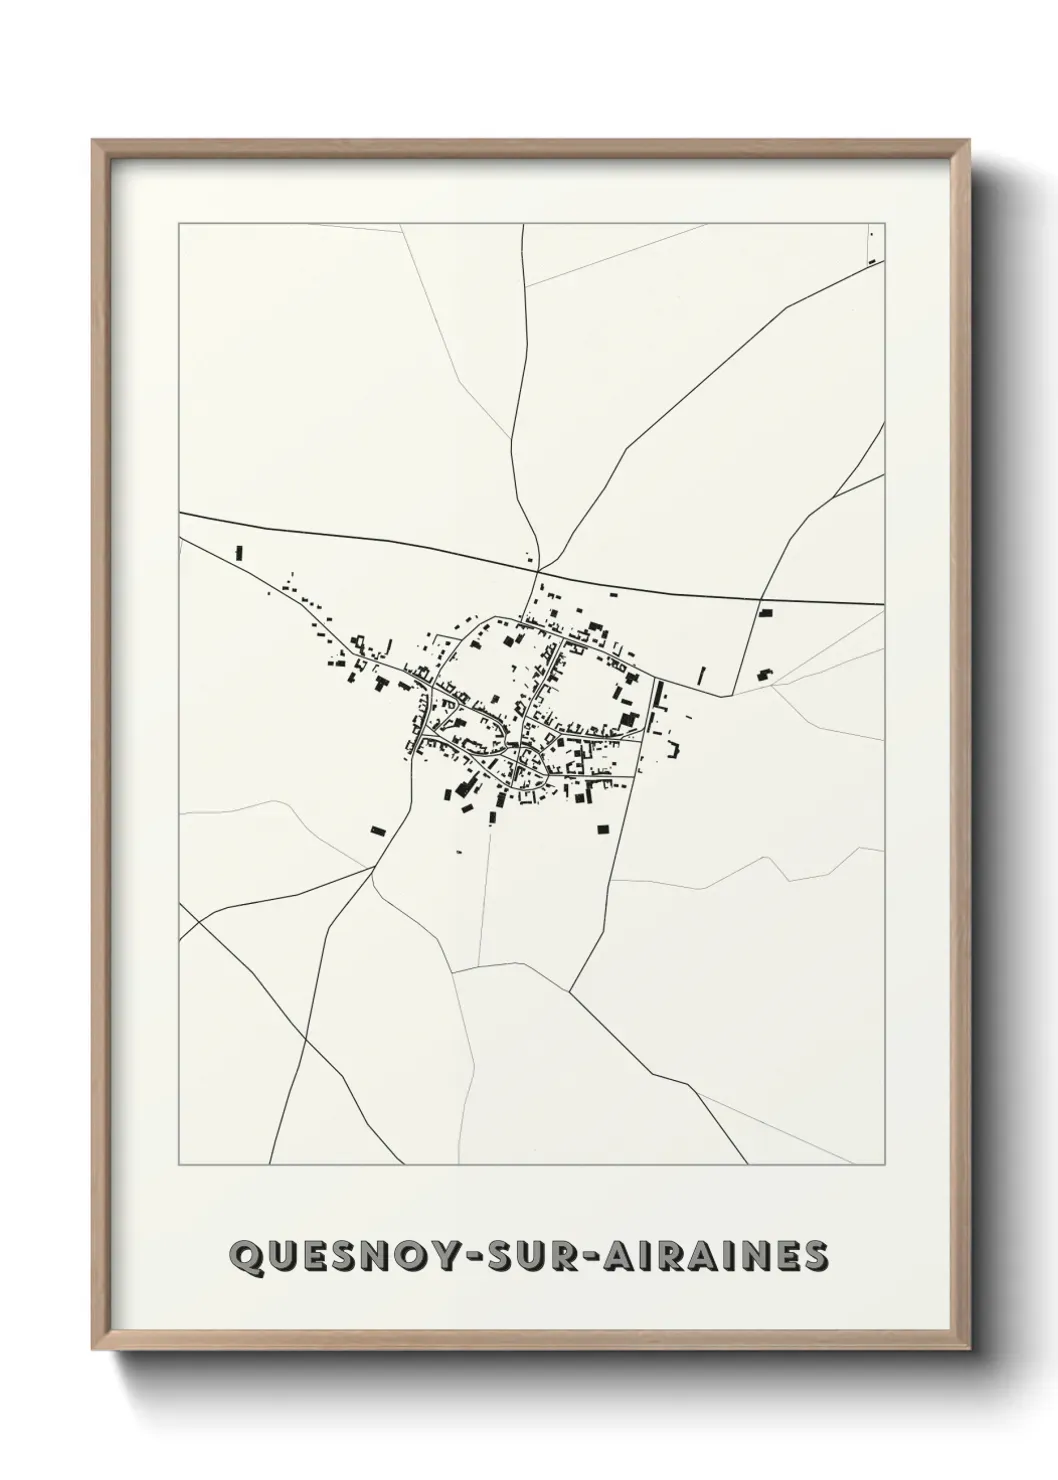 Un poster carteQuesnoy-sur-Airaines